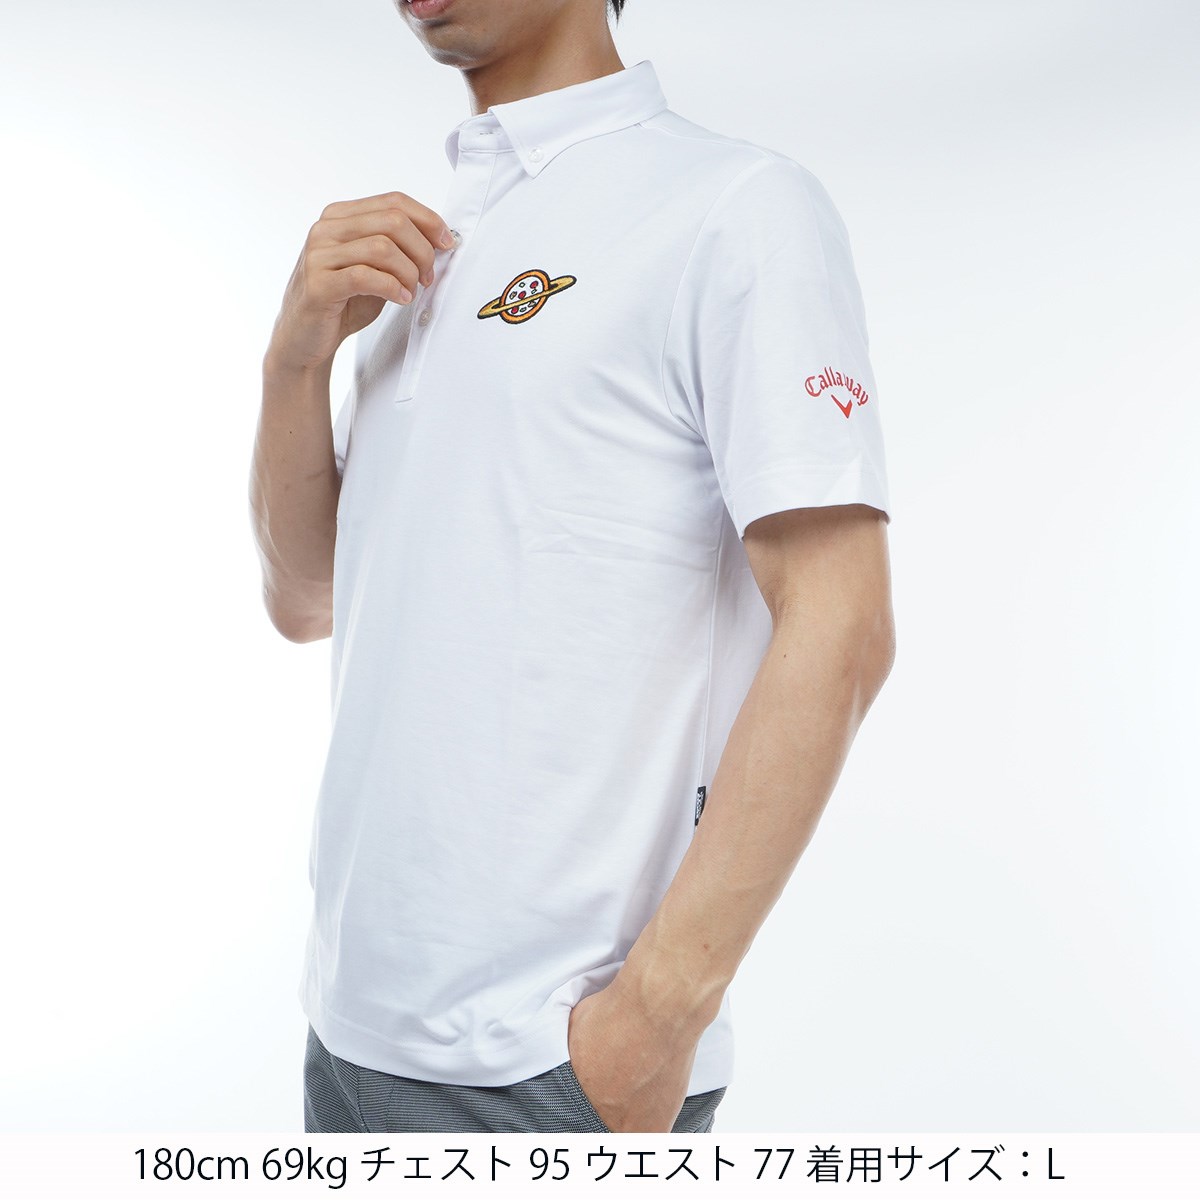 激安/新作 キャロウェイ ゴルフウェア シャツ ポロシャツ Lサイズ